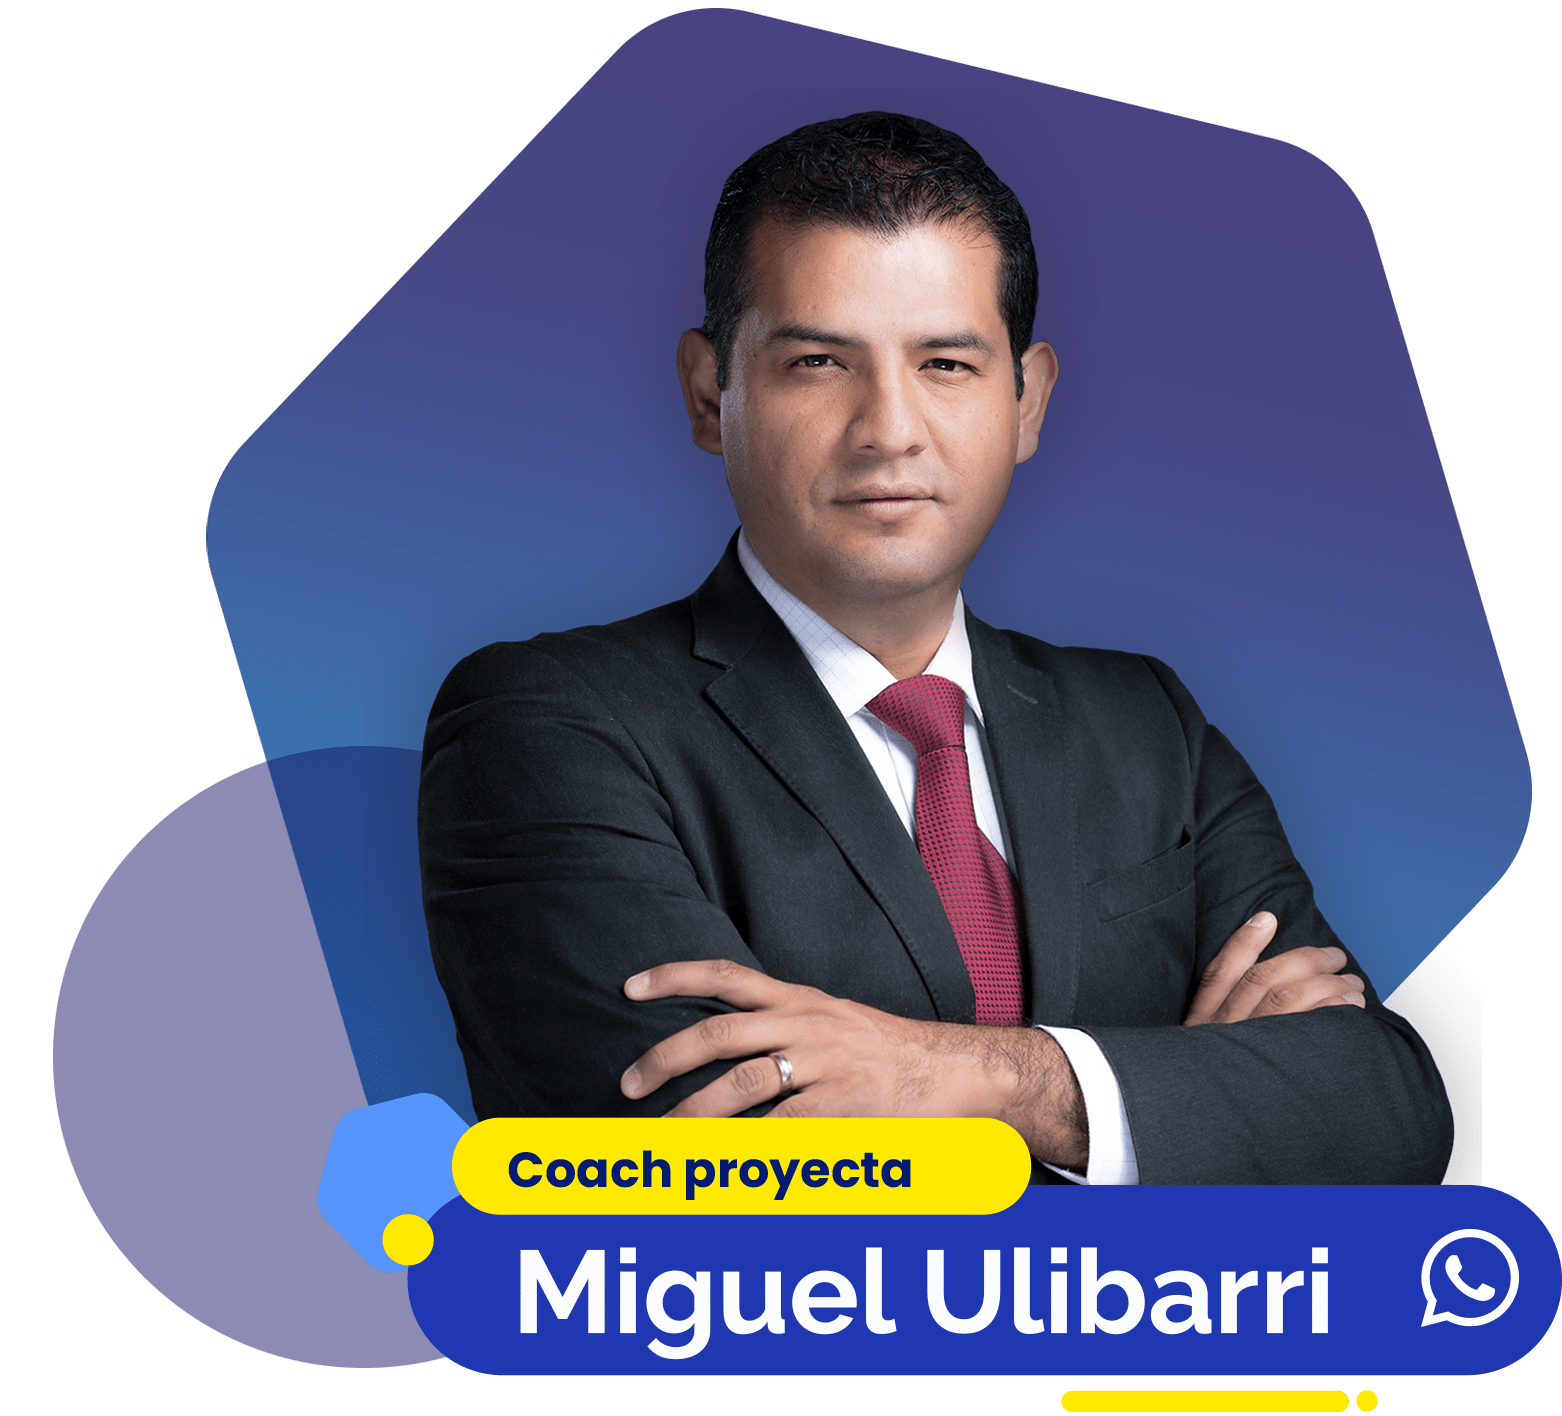 Miguel Ulibarri